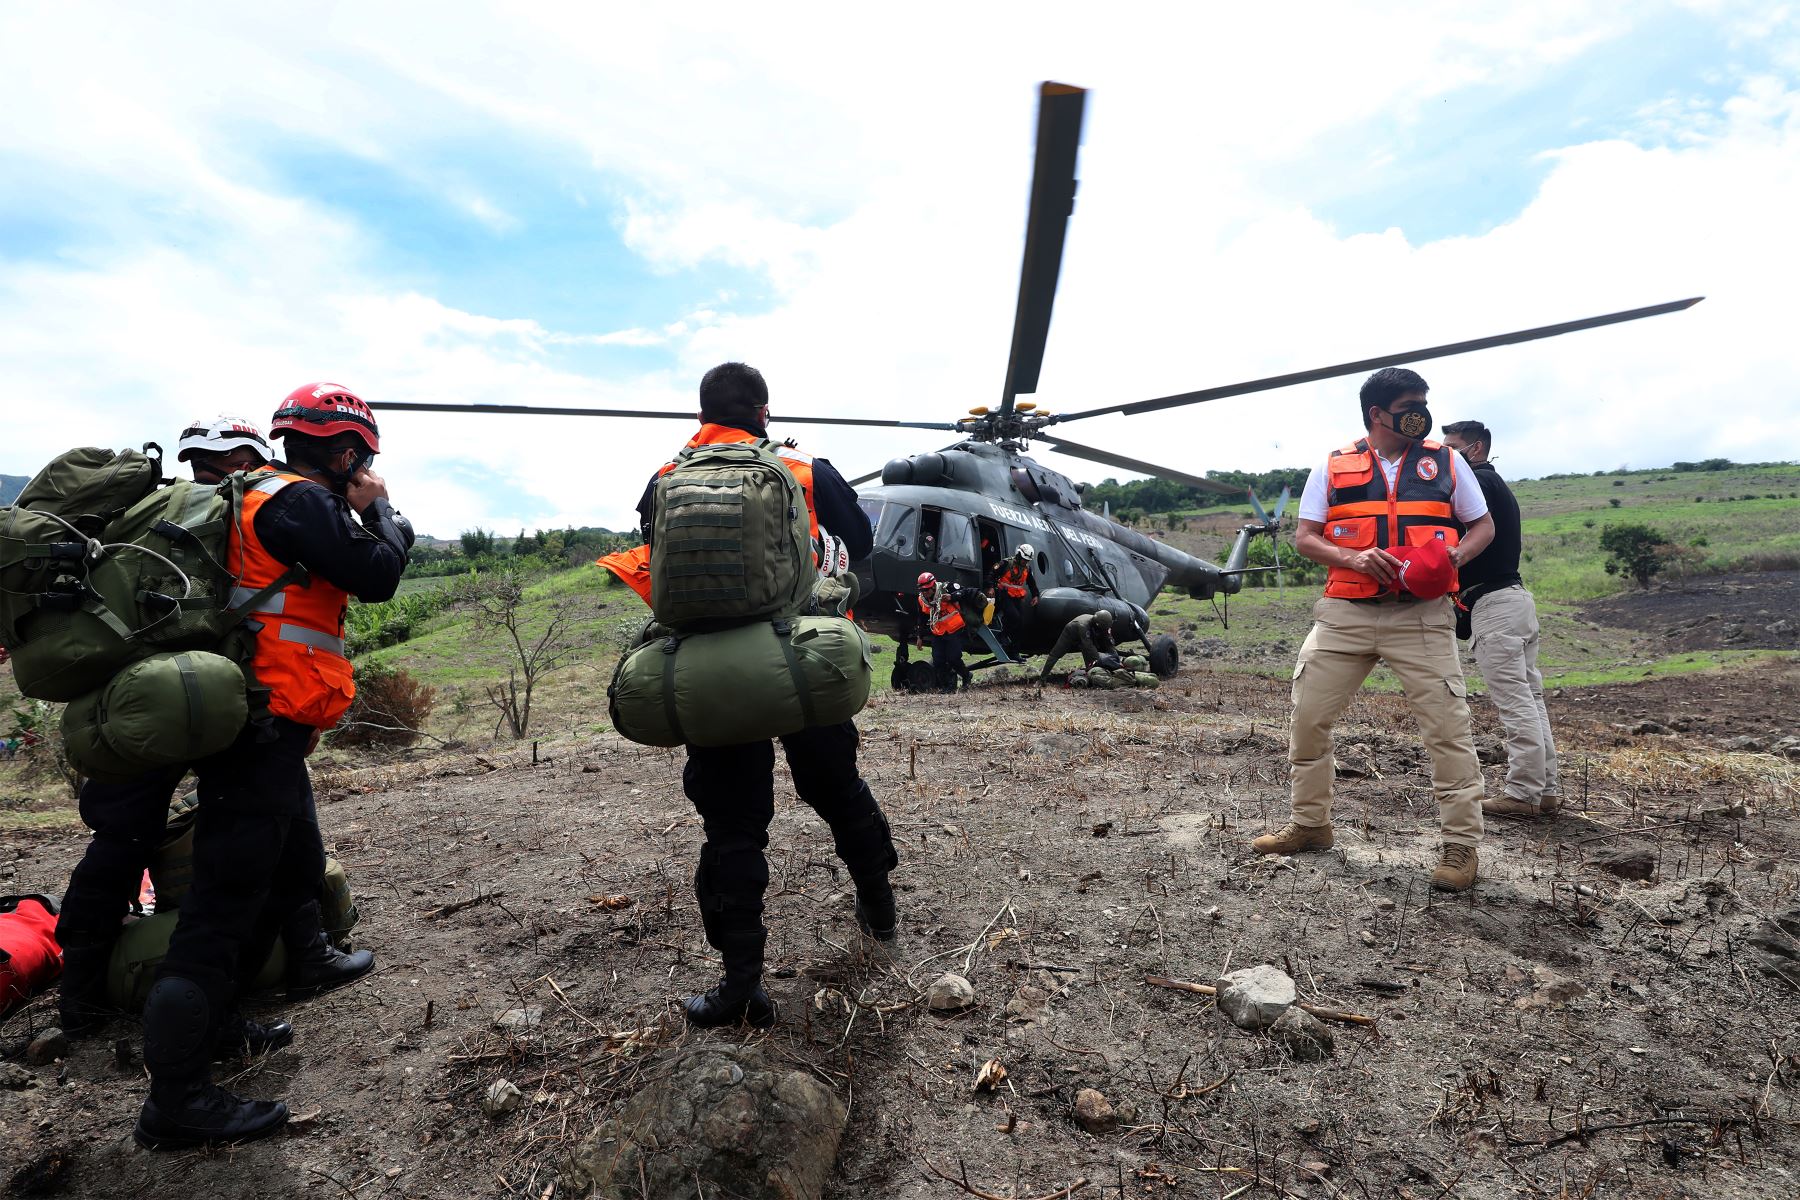 El Ministro de Defensa Juan Carrasco participa en el  rescate y traslado de damnificados  del sector El Aserradero de Utcubamba, a raíz del sismo de grado 7.5, registrado en la mañana del domingo en la selva norte del país.
Foto: Mindef